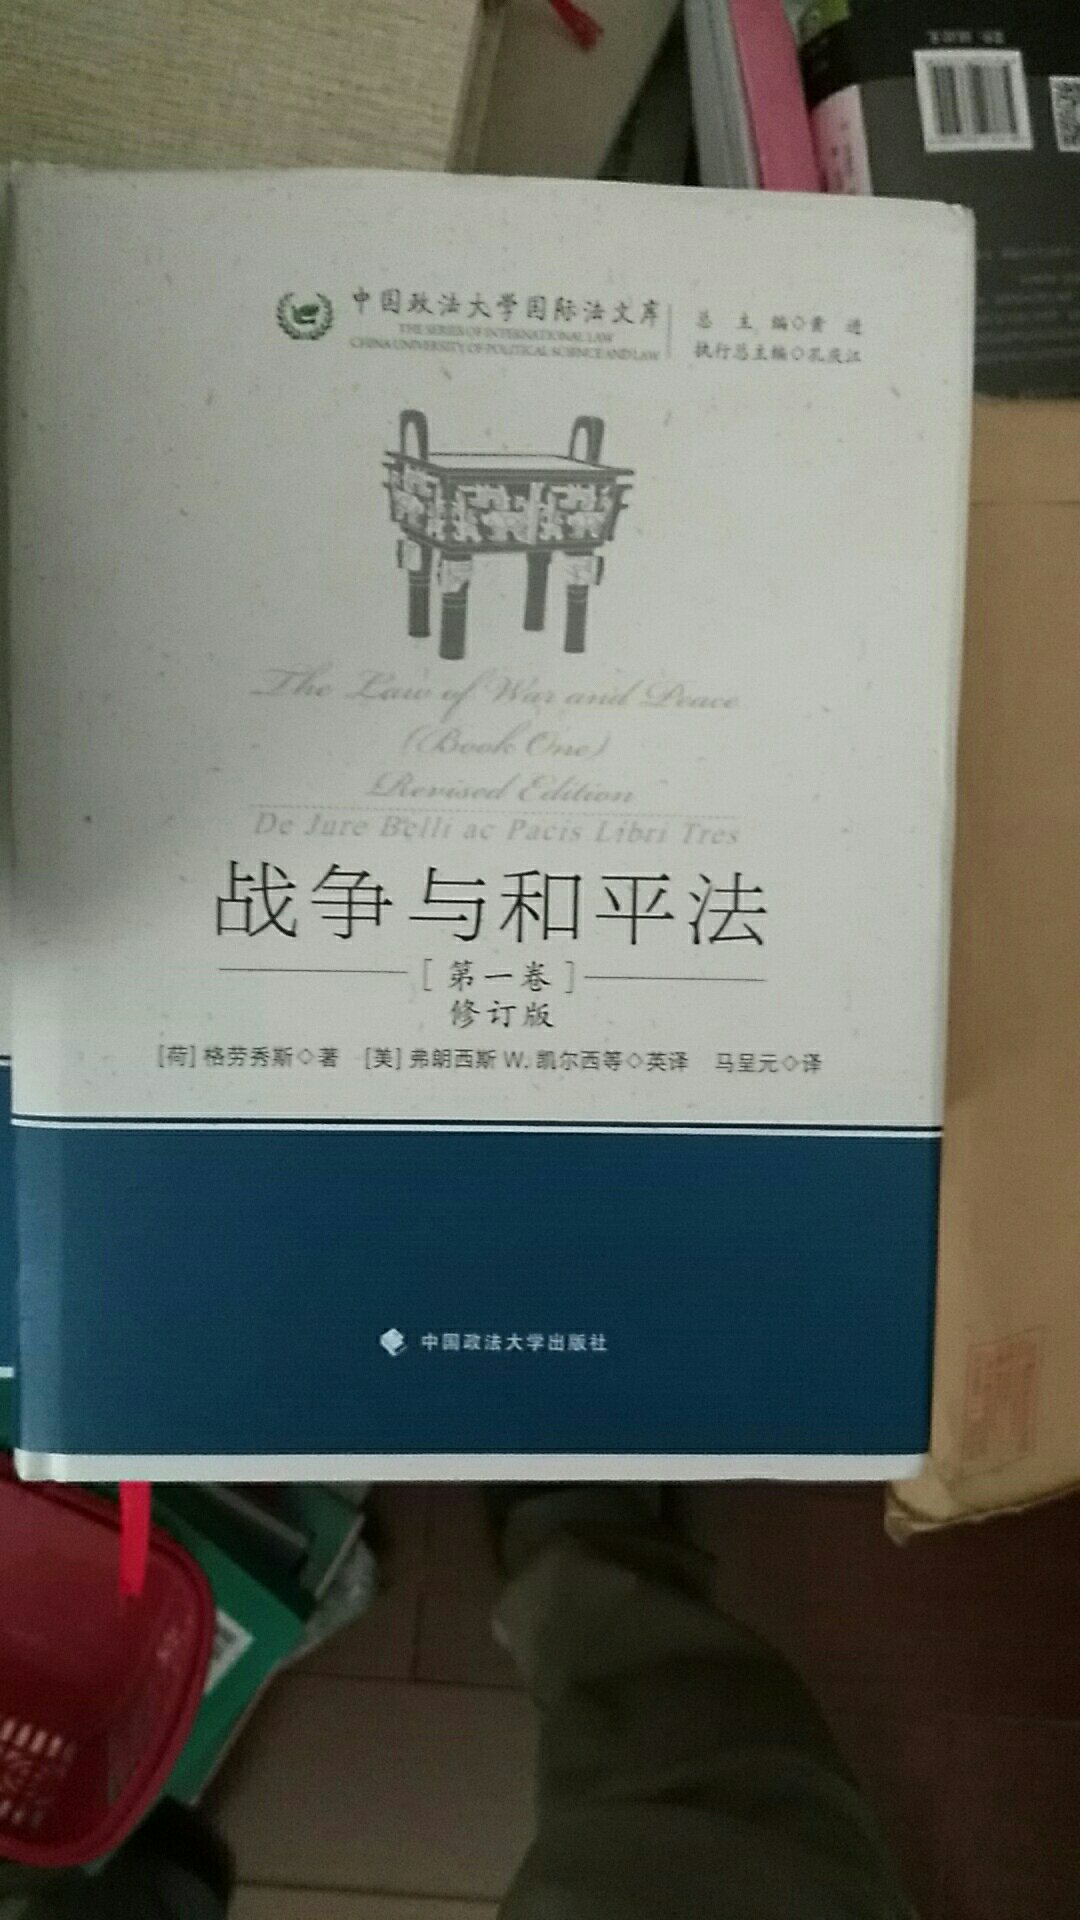 这是一套书里的第一本，第一版是15年出版的，但在网络上搜索了好久都没有找到，最后买了新版的，是国际法、政治学、哲学相关研究里的经典。据说翻译让人很放心。